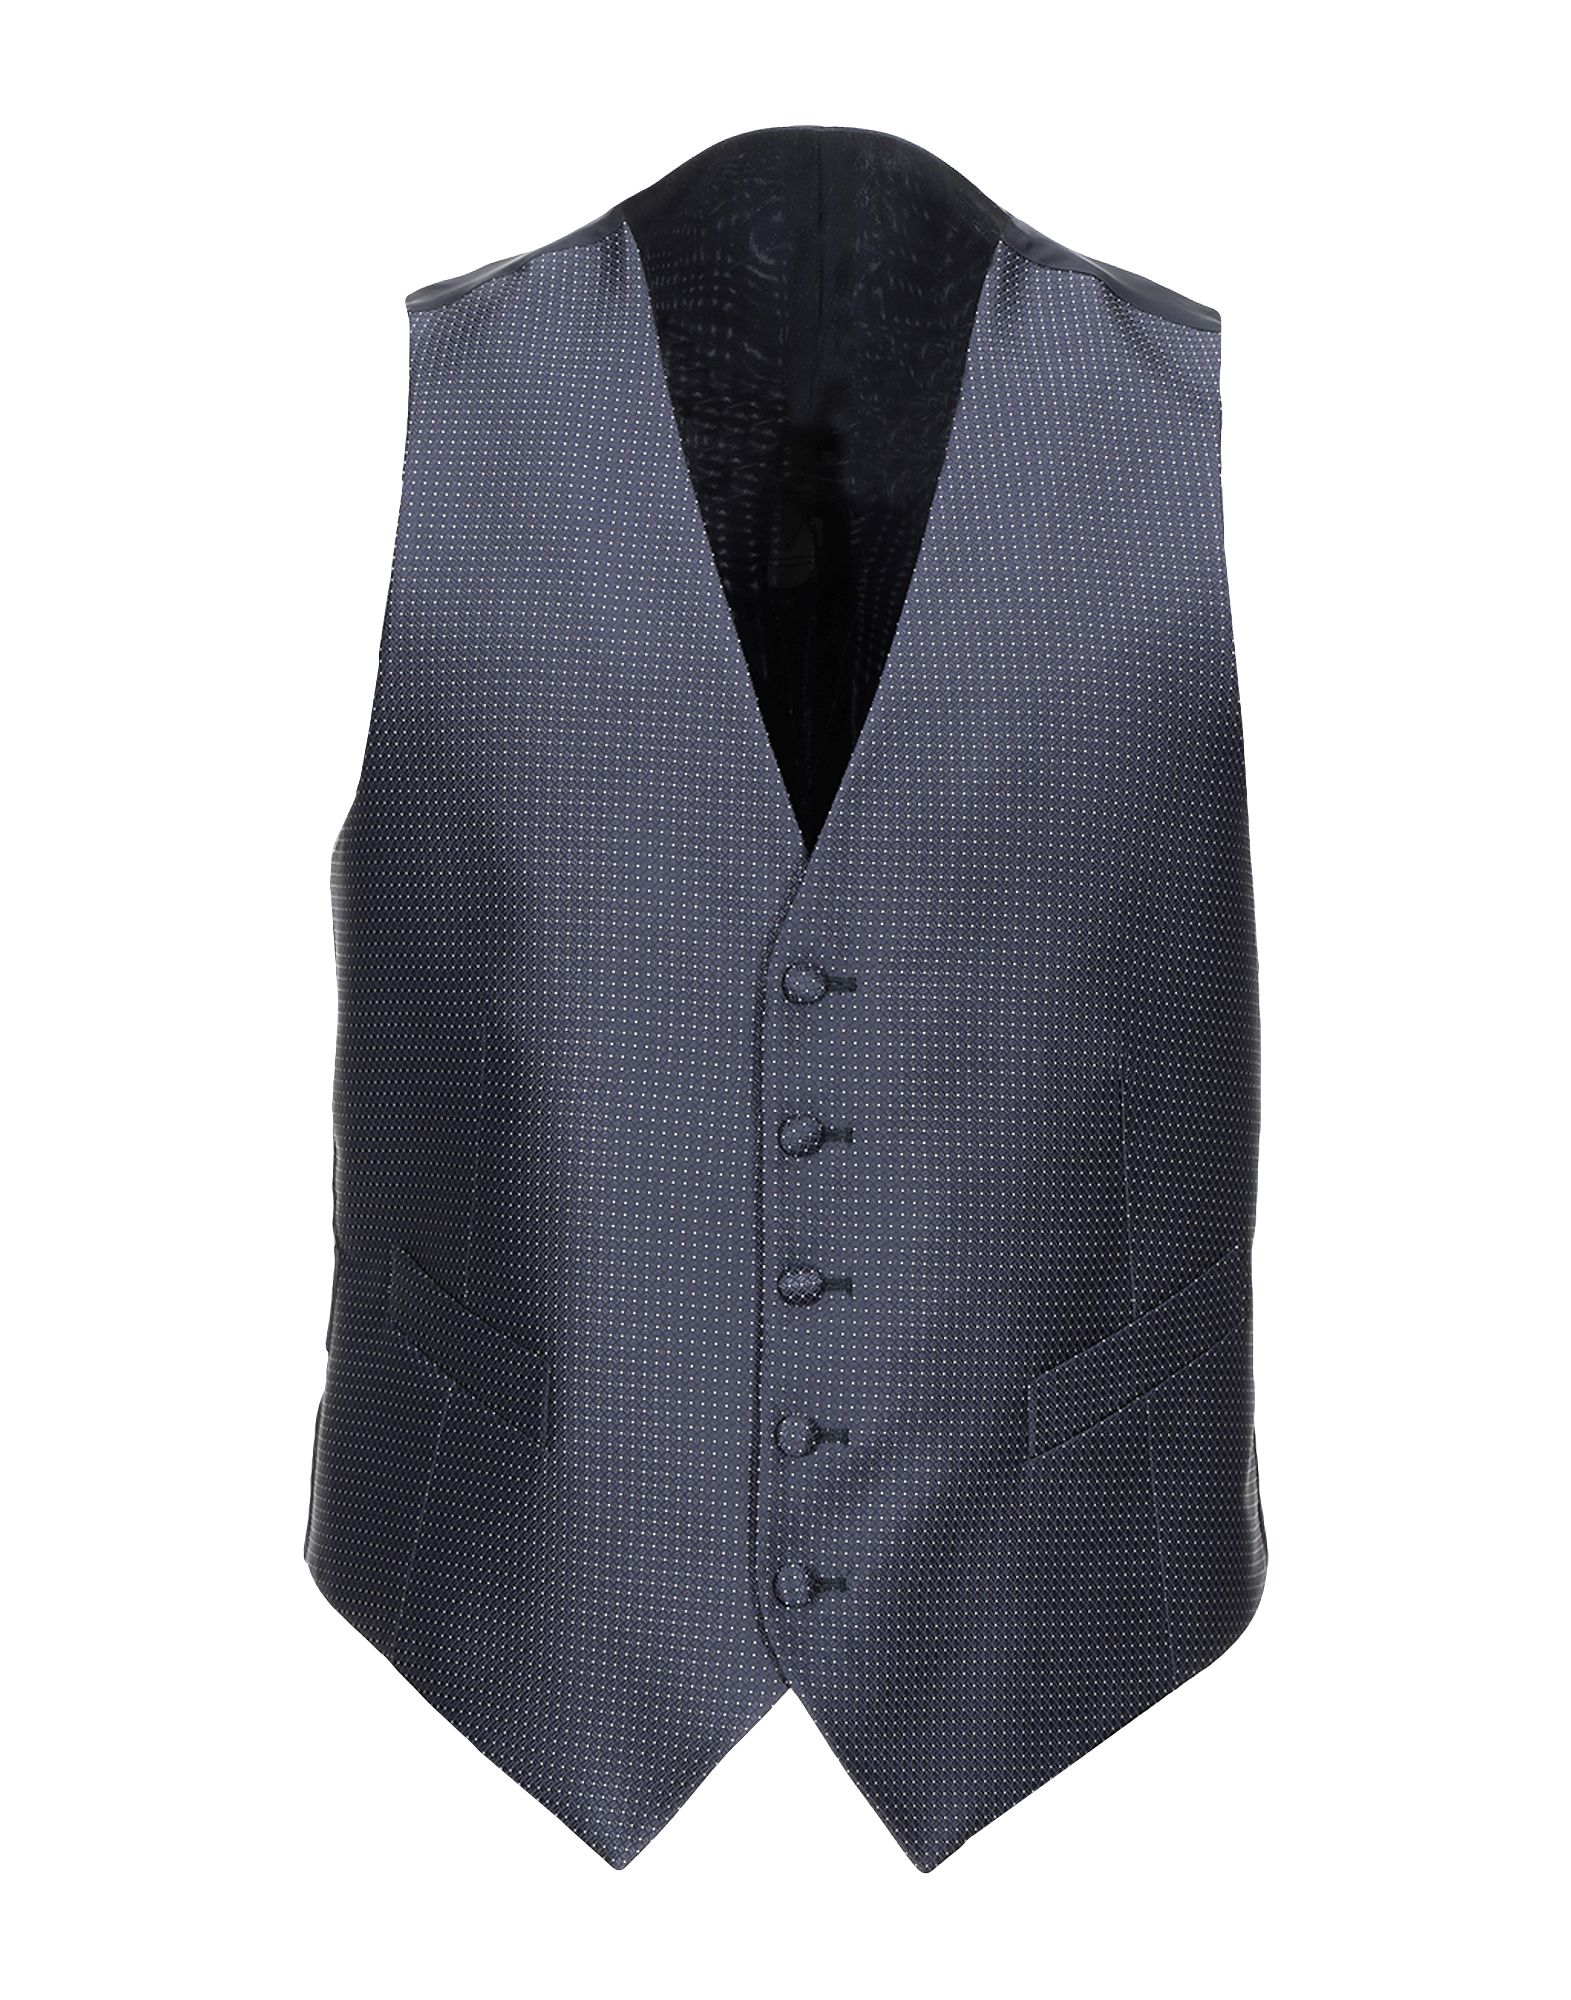 SARTORIA LATORRE Suit vest,49472726WC 4